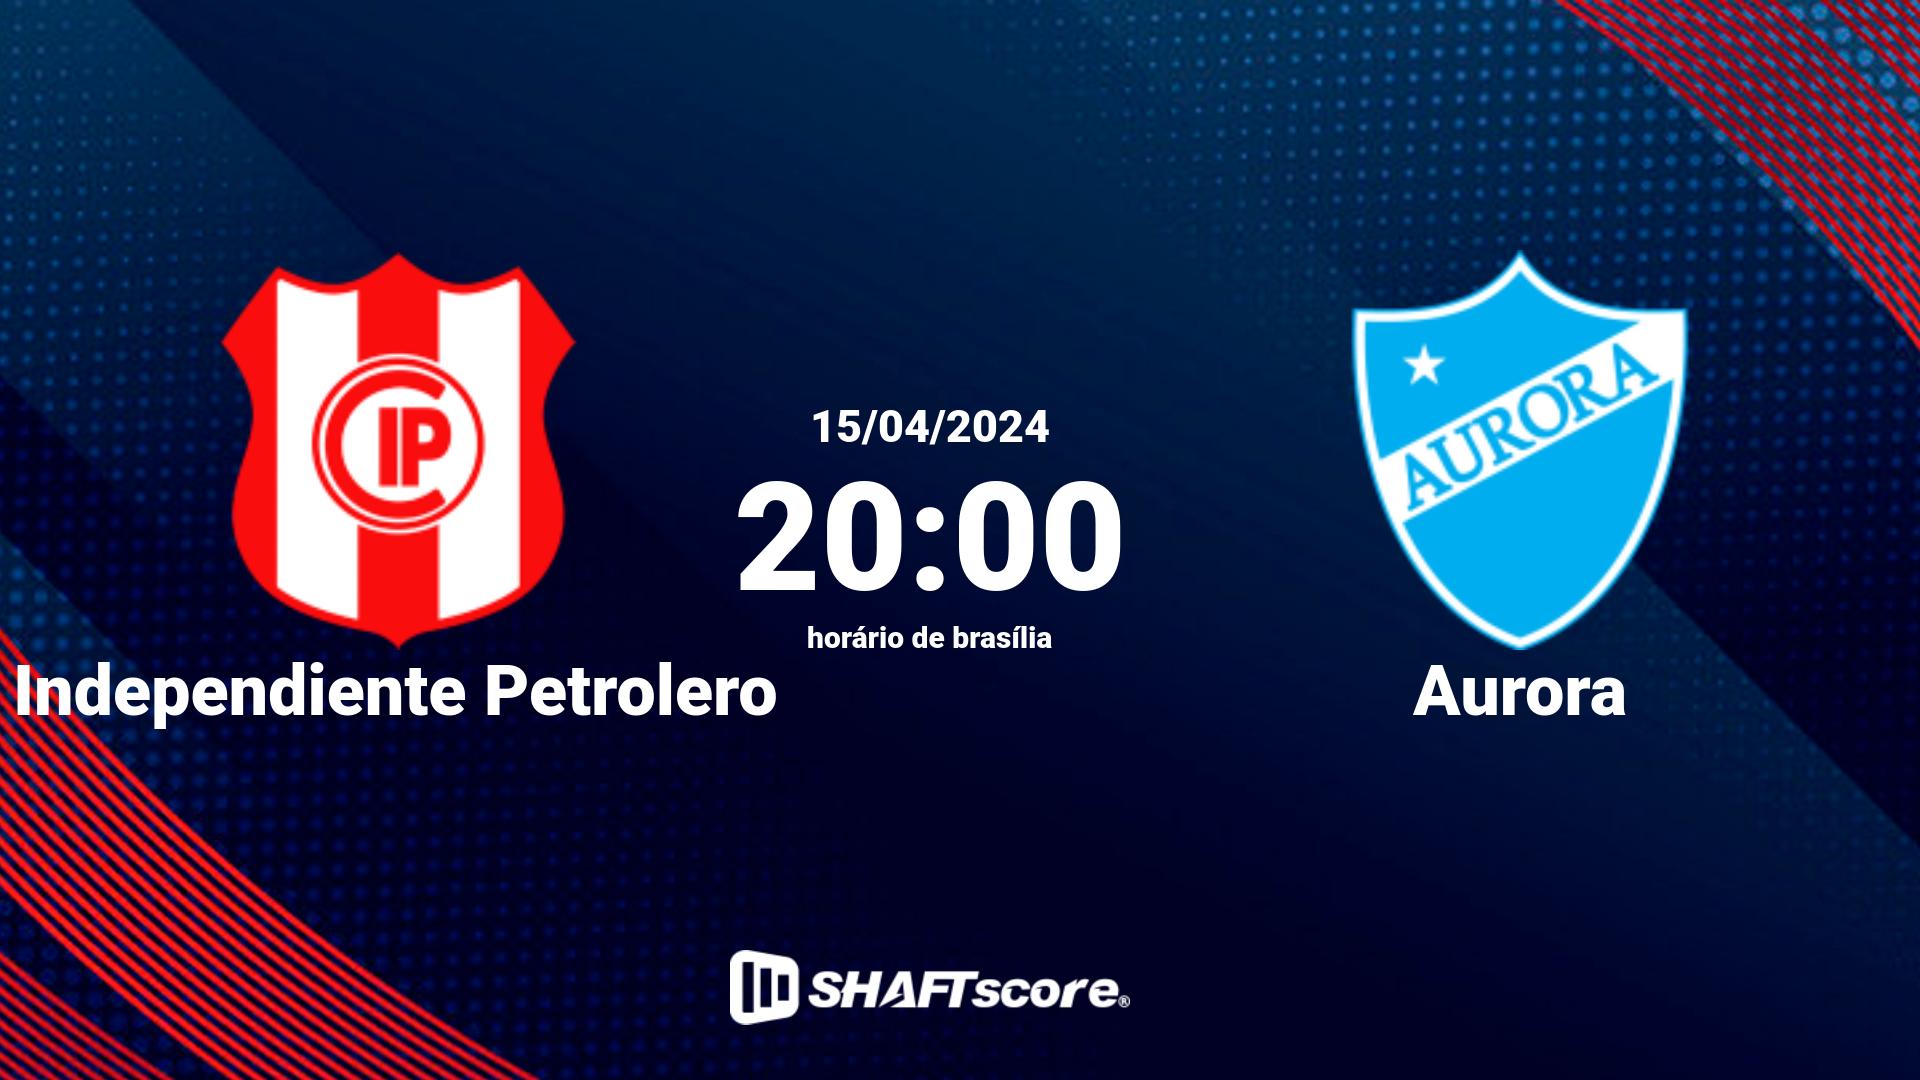 Estatísticas do jogo Independiente Petrolero vs Aurora 15.04 20:00